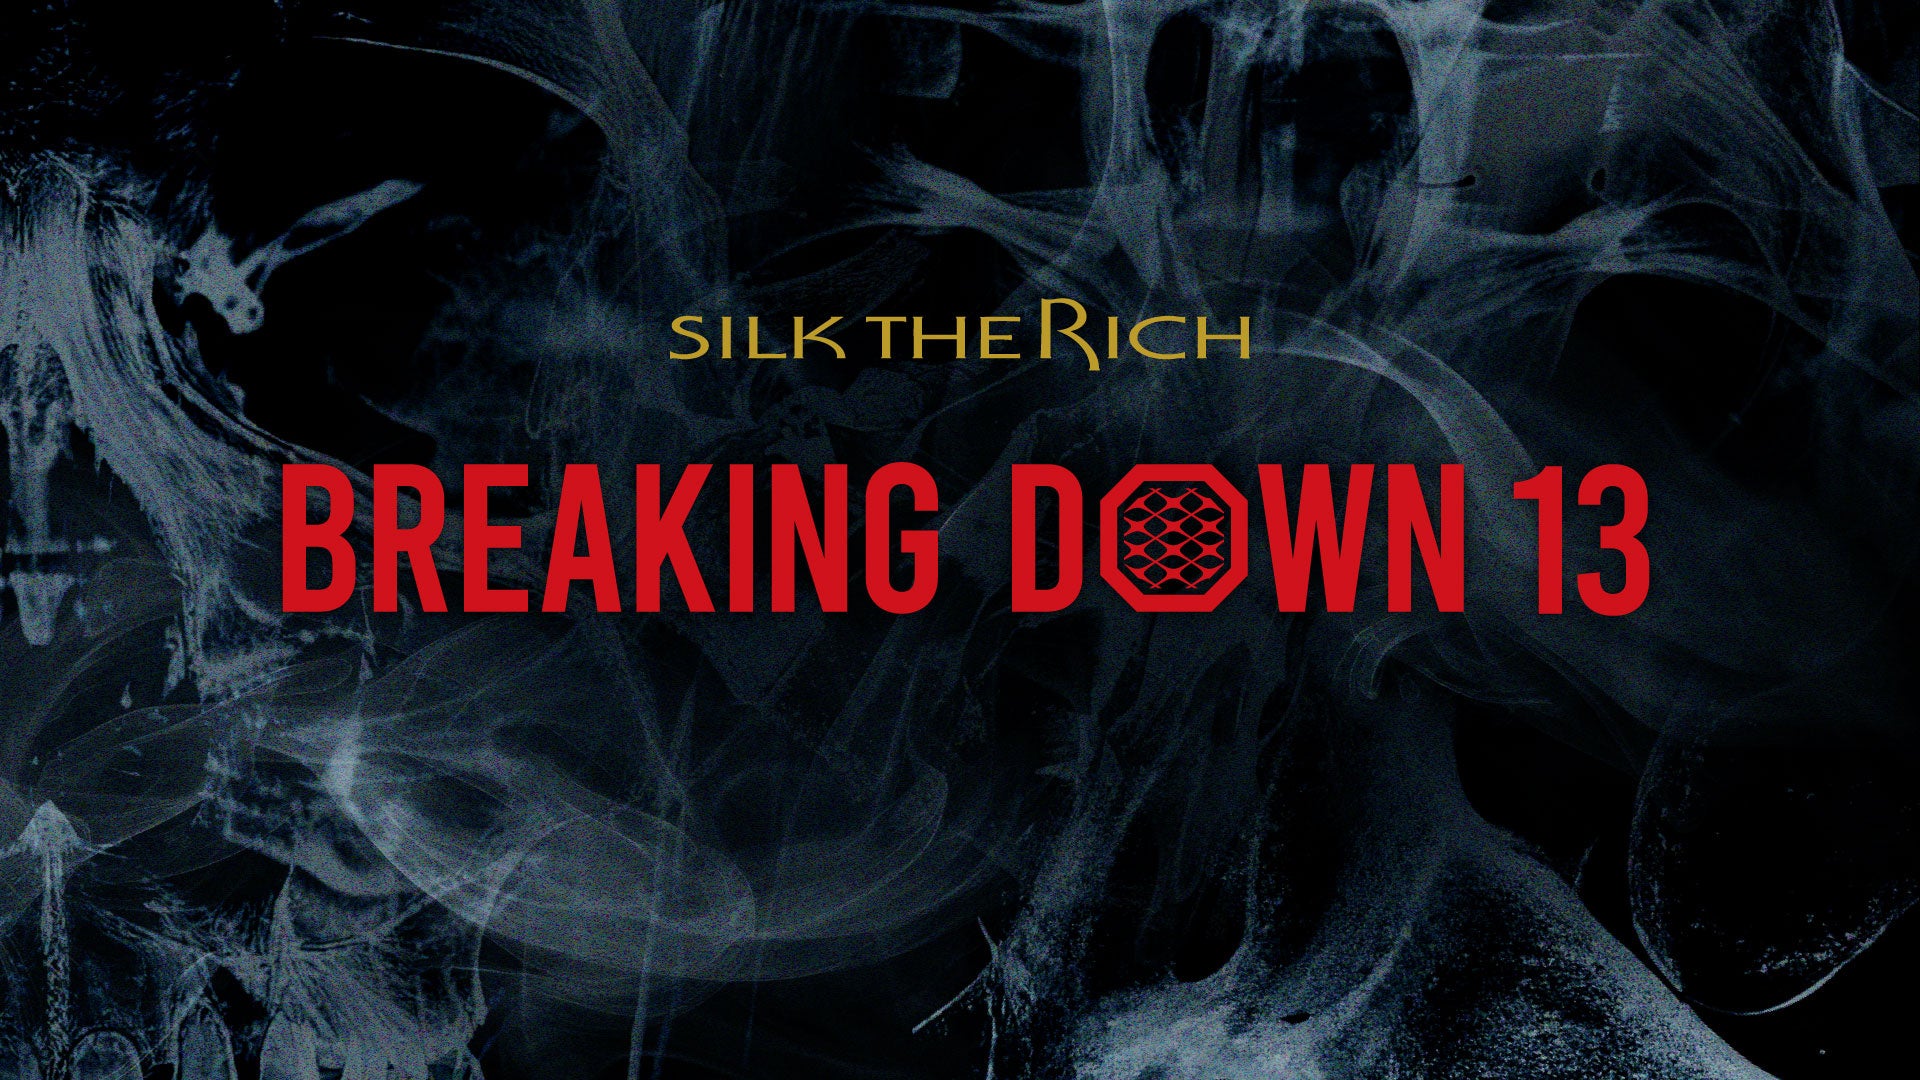 ーシルクの魅力と可能性を発信するTHE RICHー「BreakingDown12」に引き続き、2大会連続となる「BreakingDown13」のメインスポンサーに就任